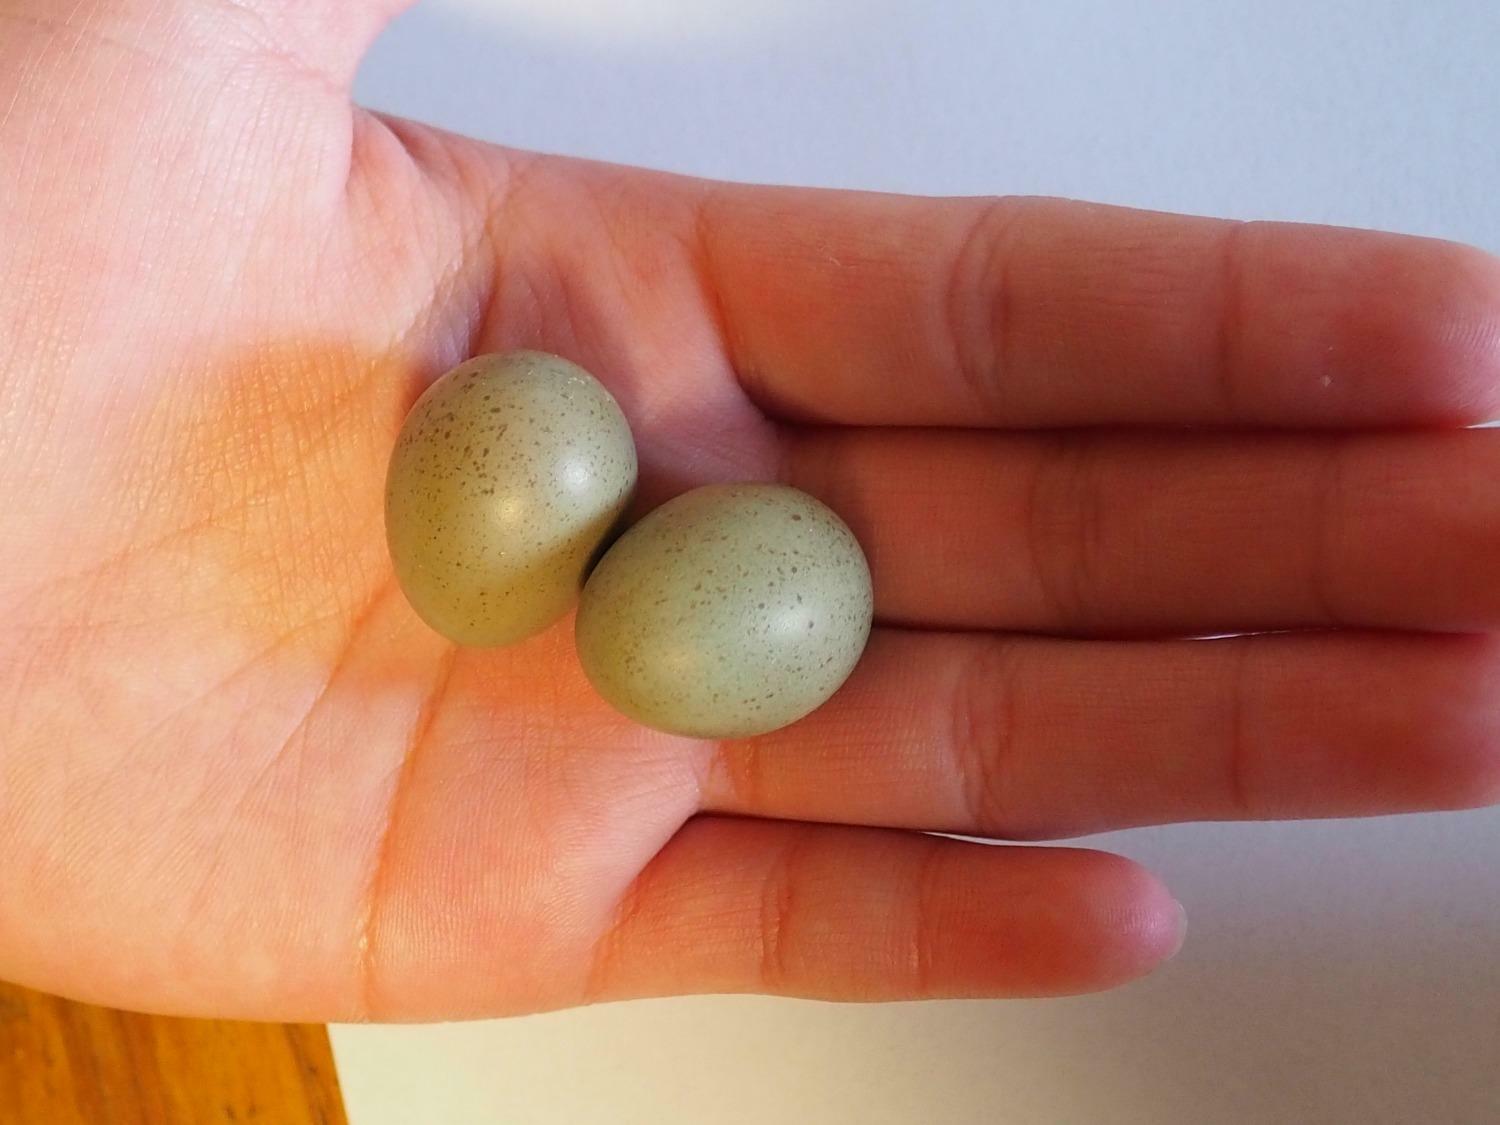 卵のサイズ。市販のウズラの卵よりも小さい